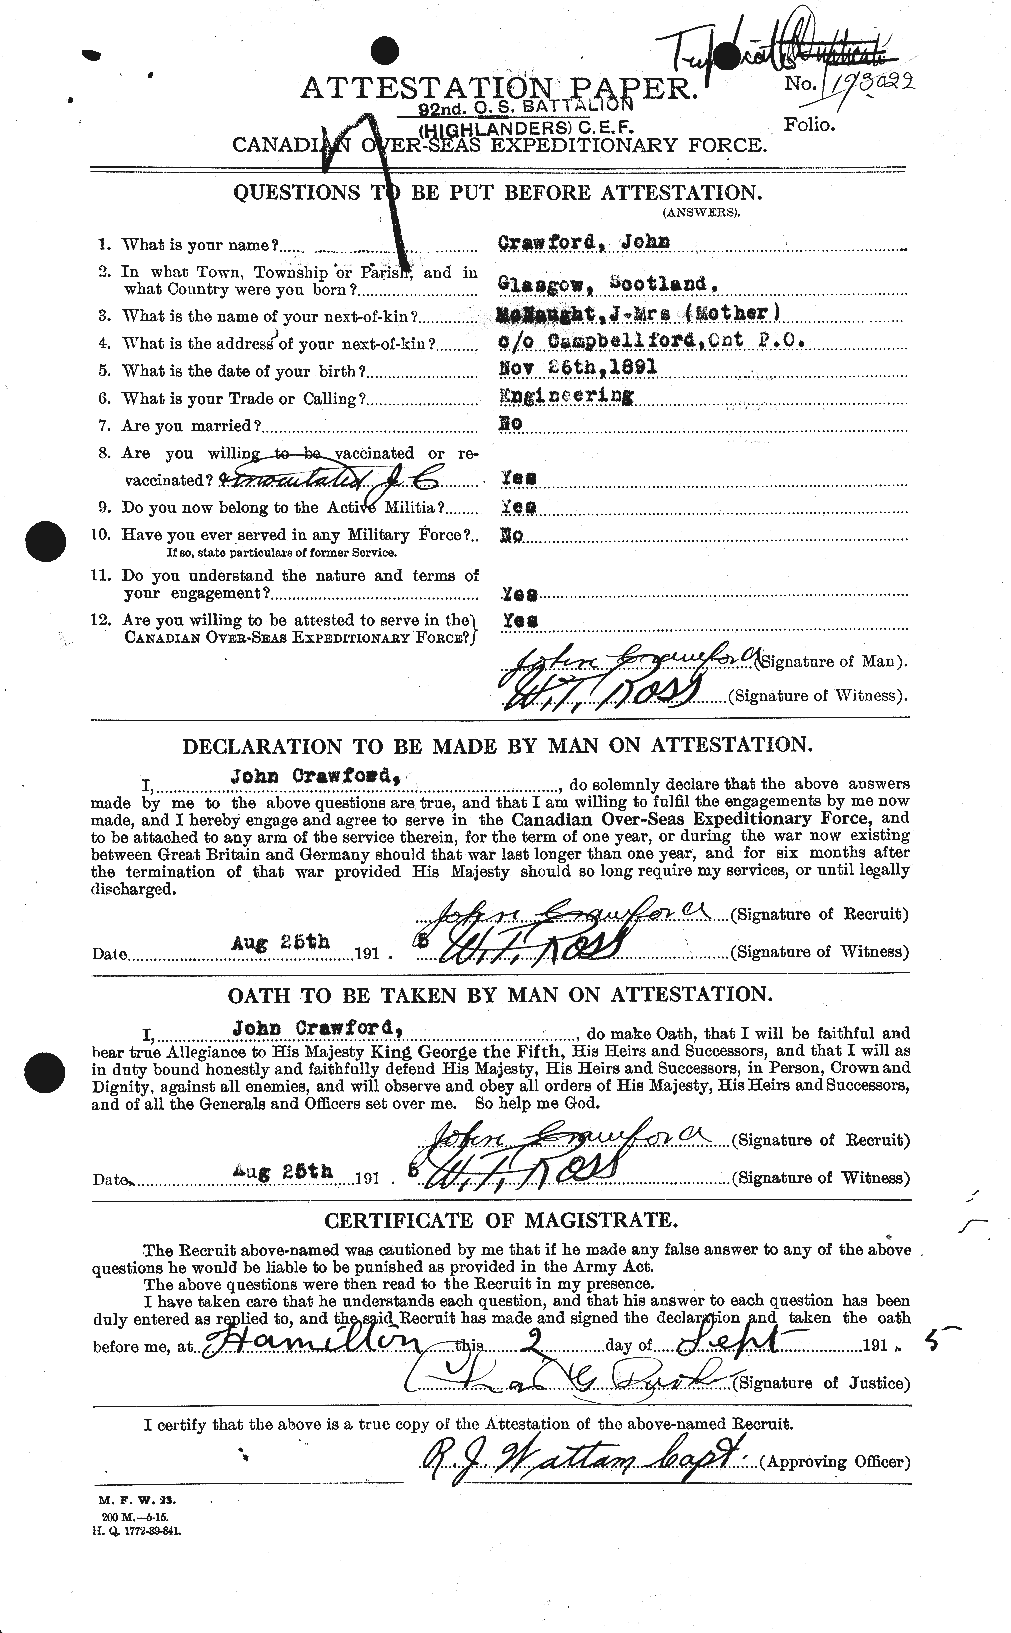 Dossiers du Personnel de la Première Guerre mondiale - CEC 062450a